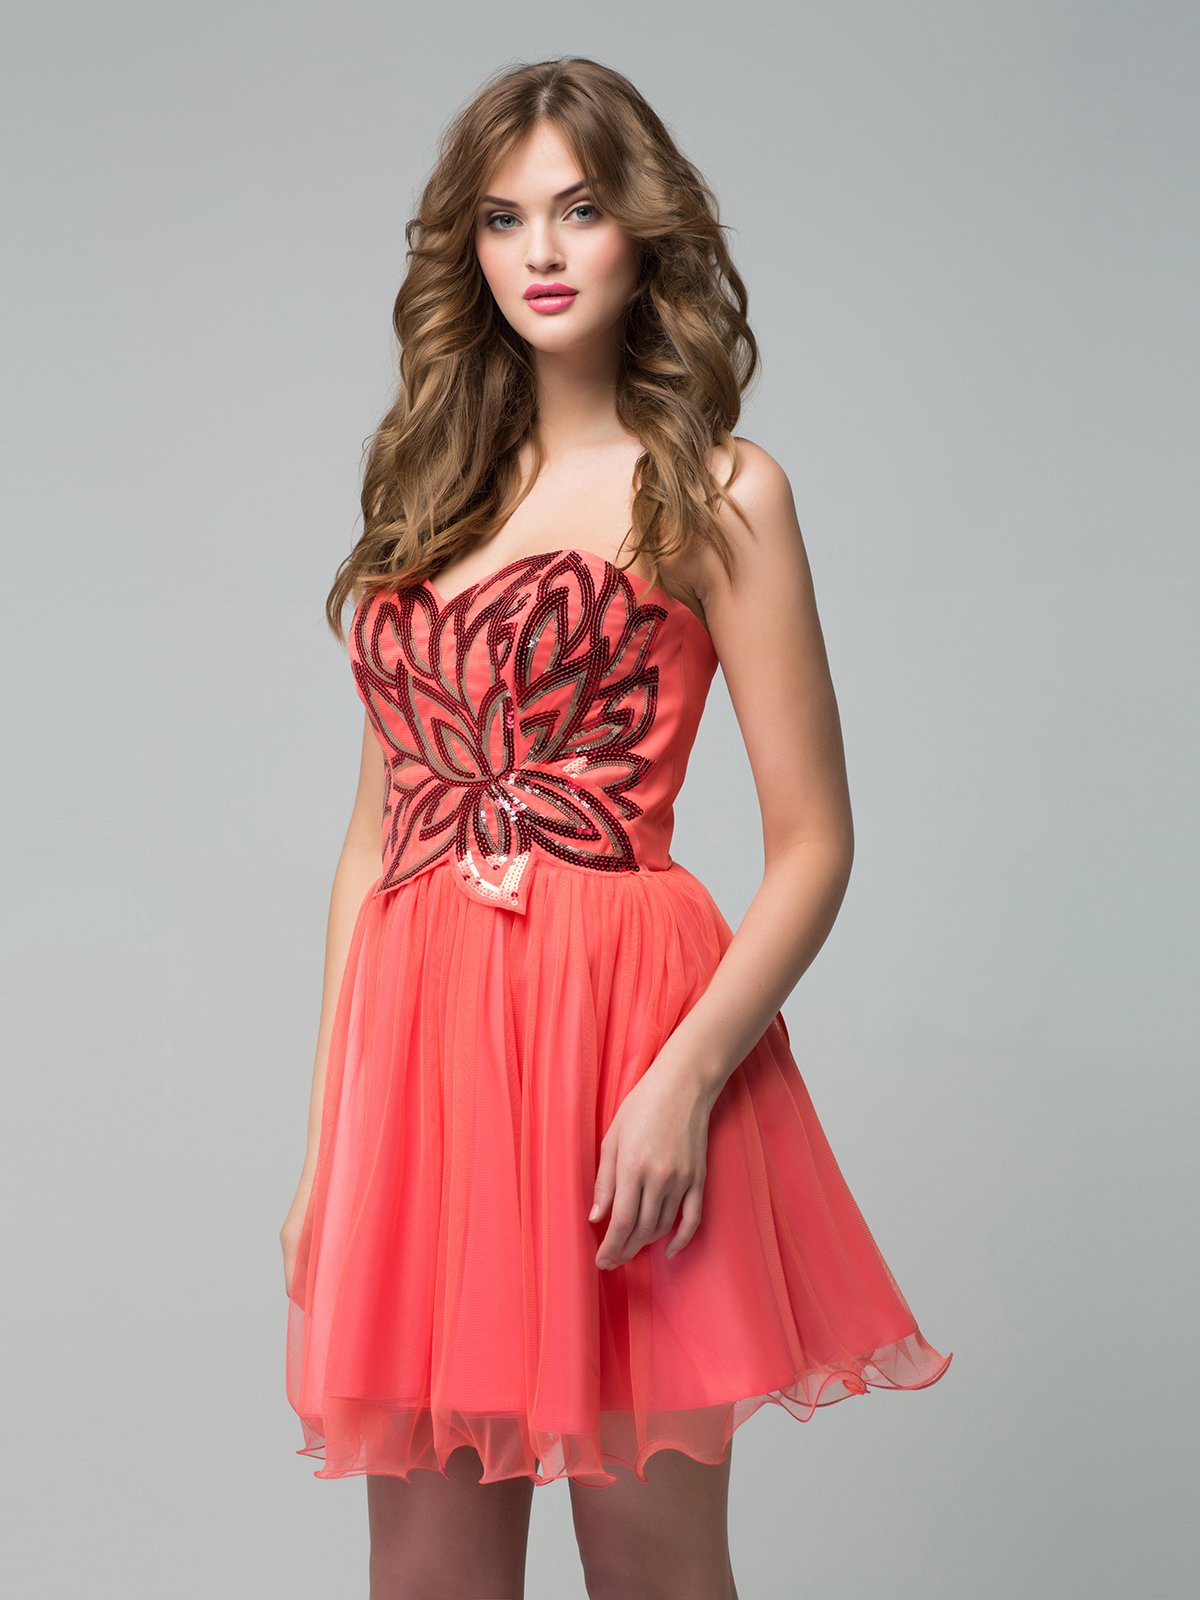 Платье коралловое | 3396712